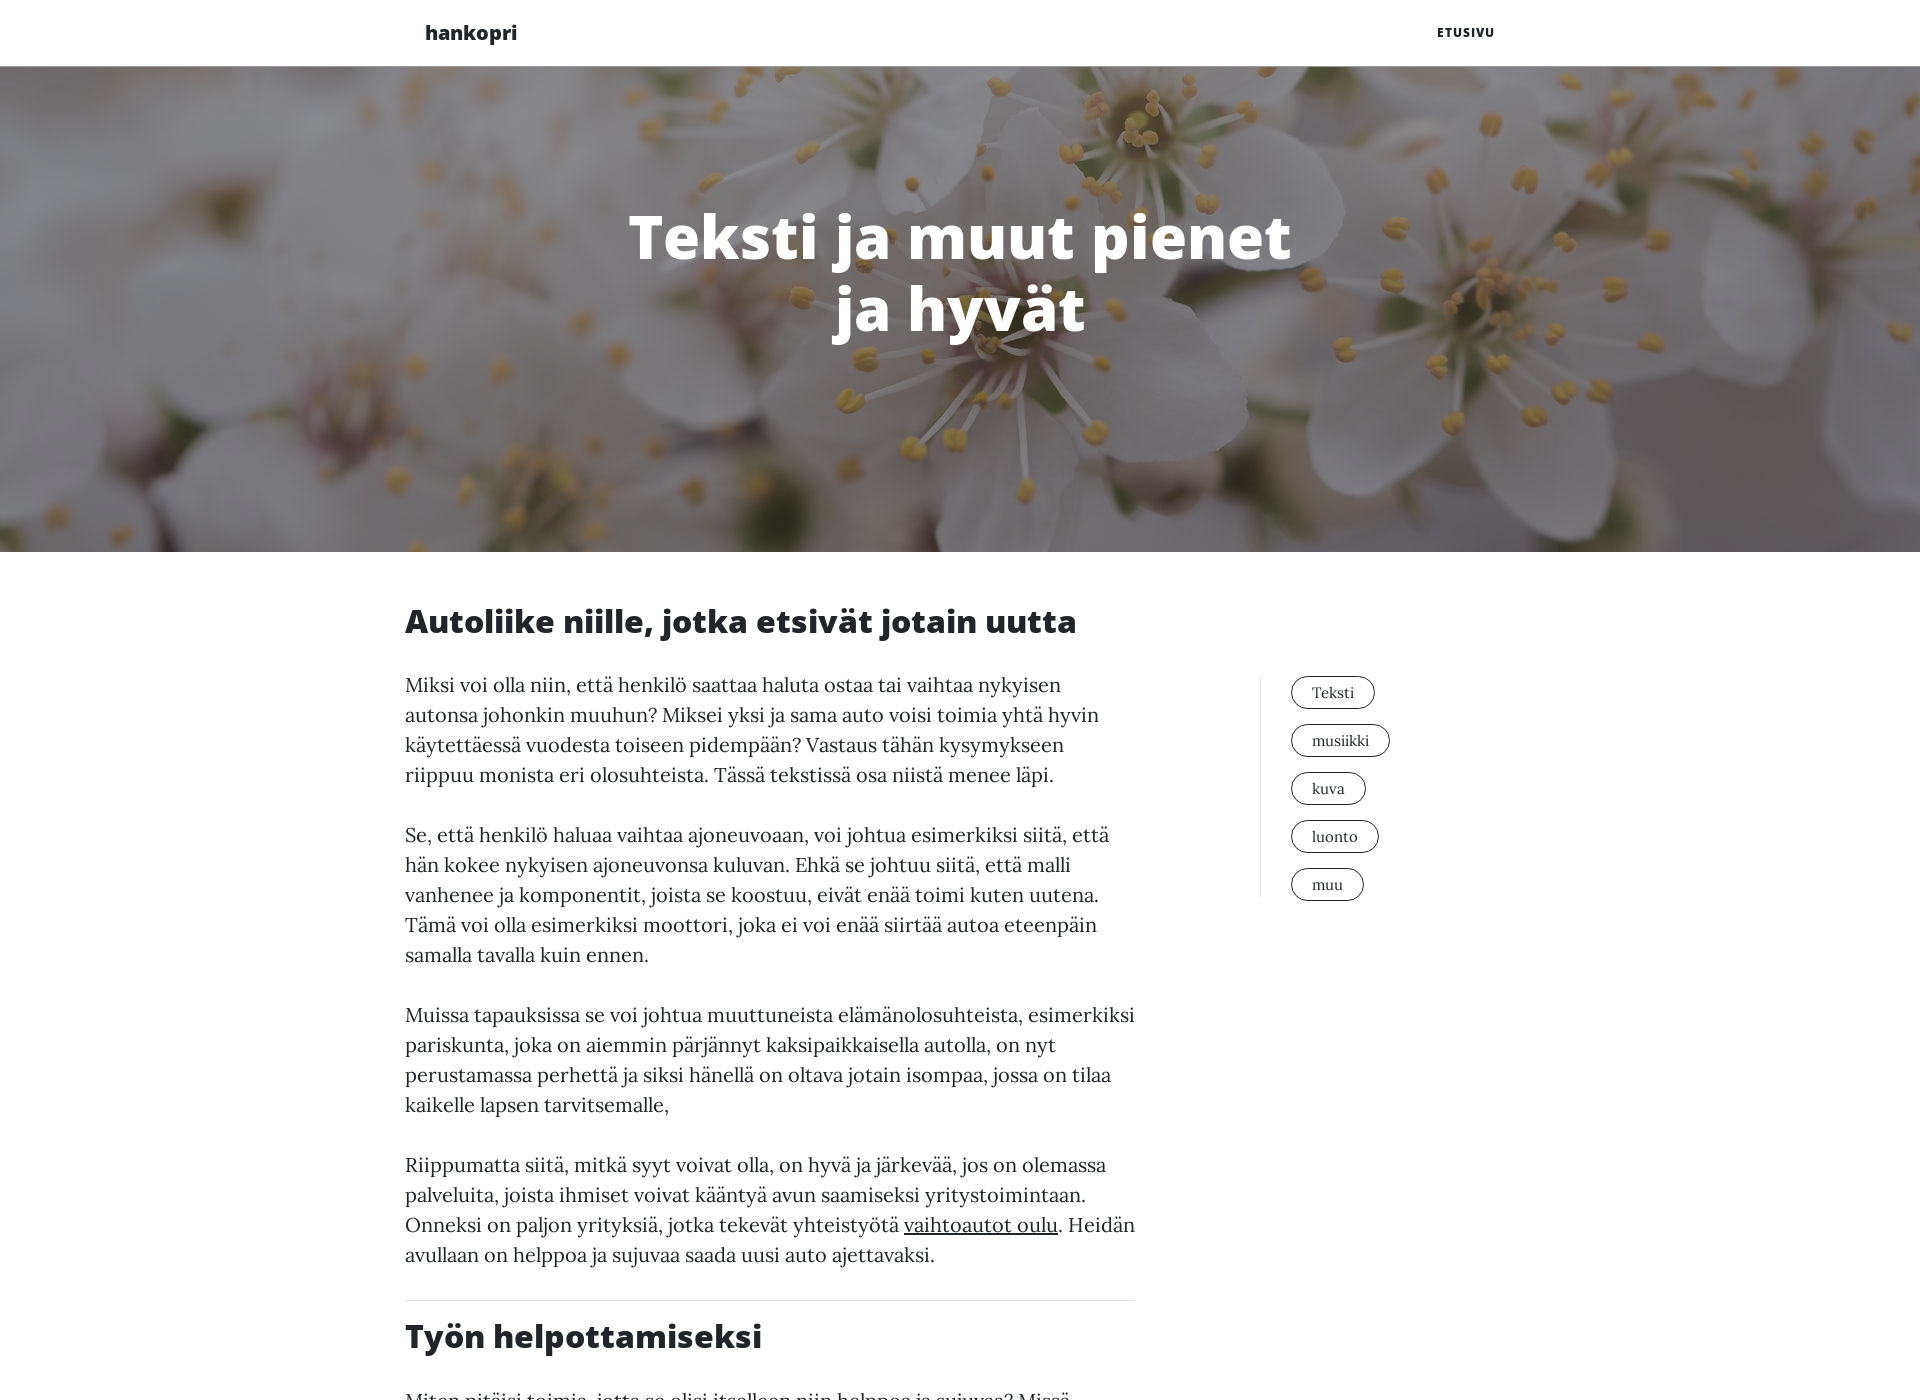 Skärmdump för hankopride.fi